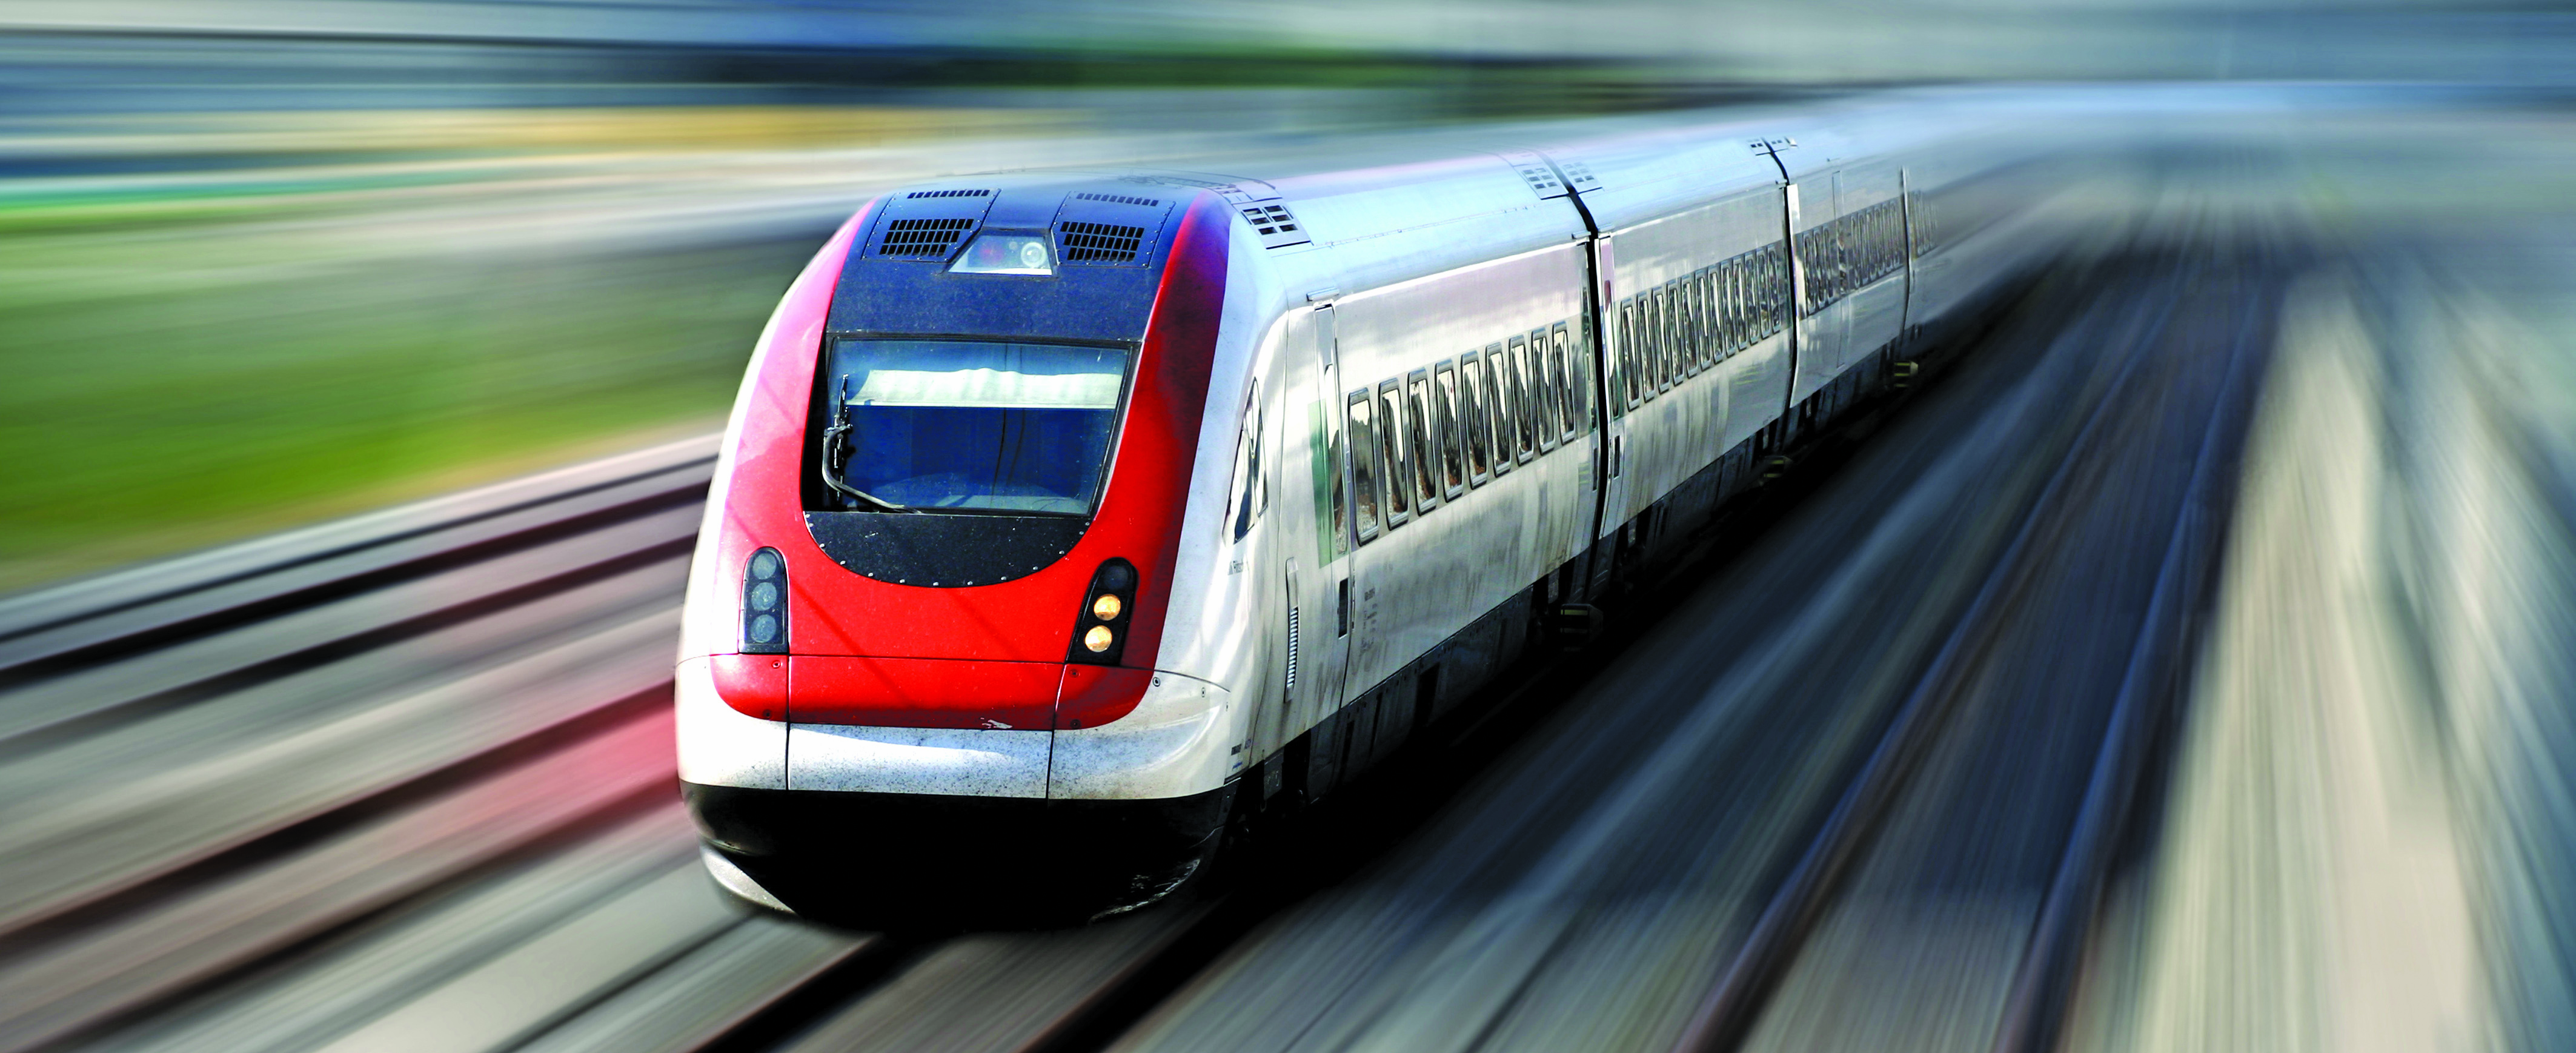 Oman rail ‘still on track’ say officials